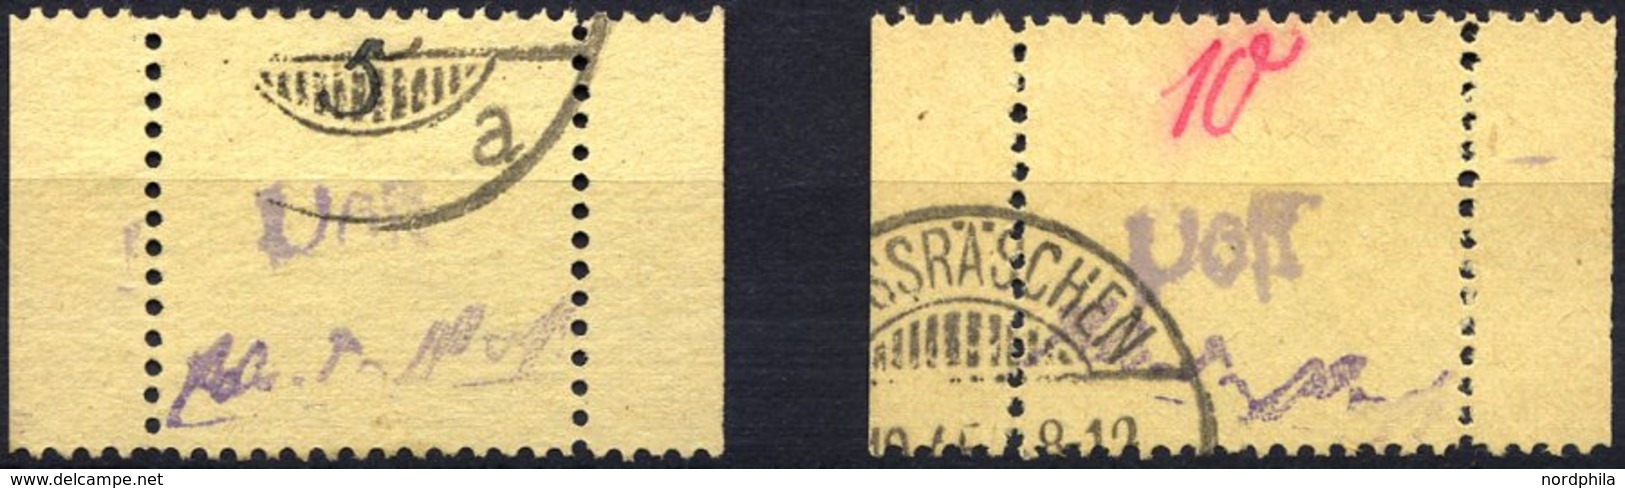 GROSSRÄSCHEN 3S,6S O, 1945, 5 Und 10 Pf. Gebührenmarke Aus Streifen, 2 Prachtwerte, Fotoattest Zierer, Mi. 900.- - Posta Privata & Locale